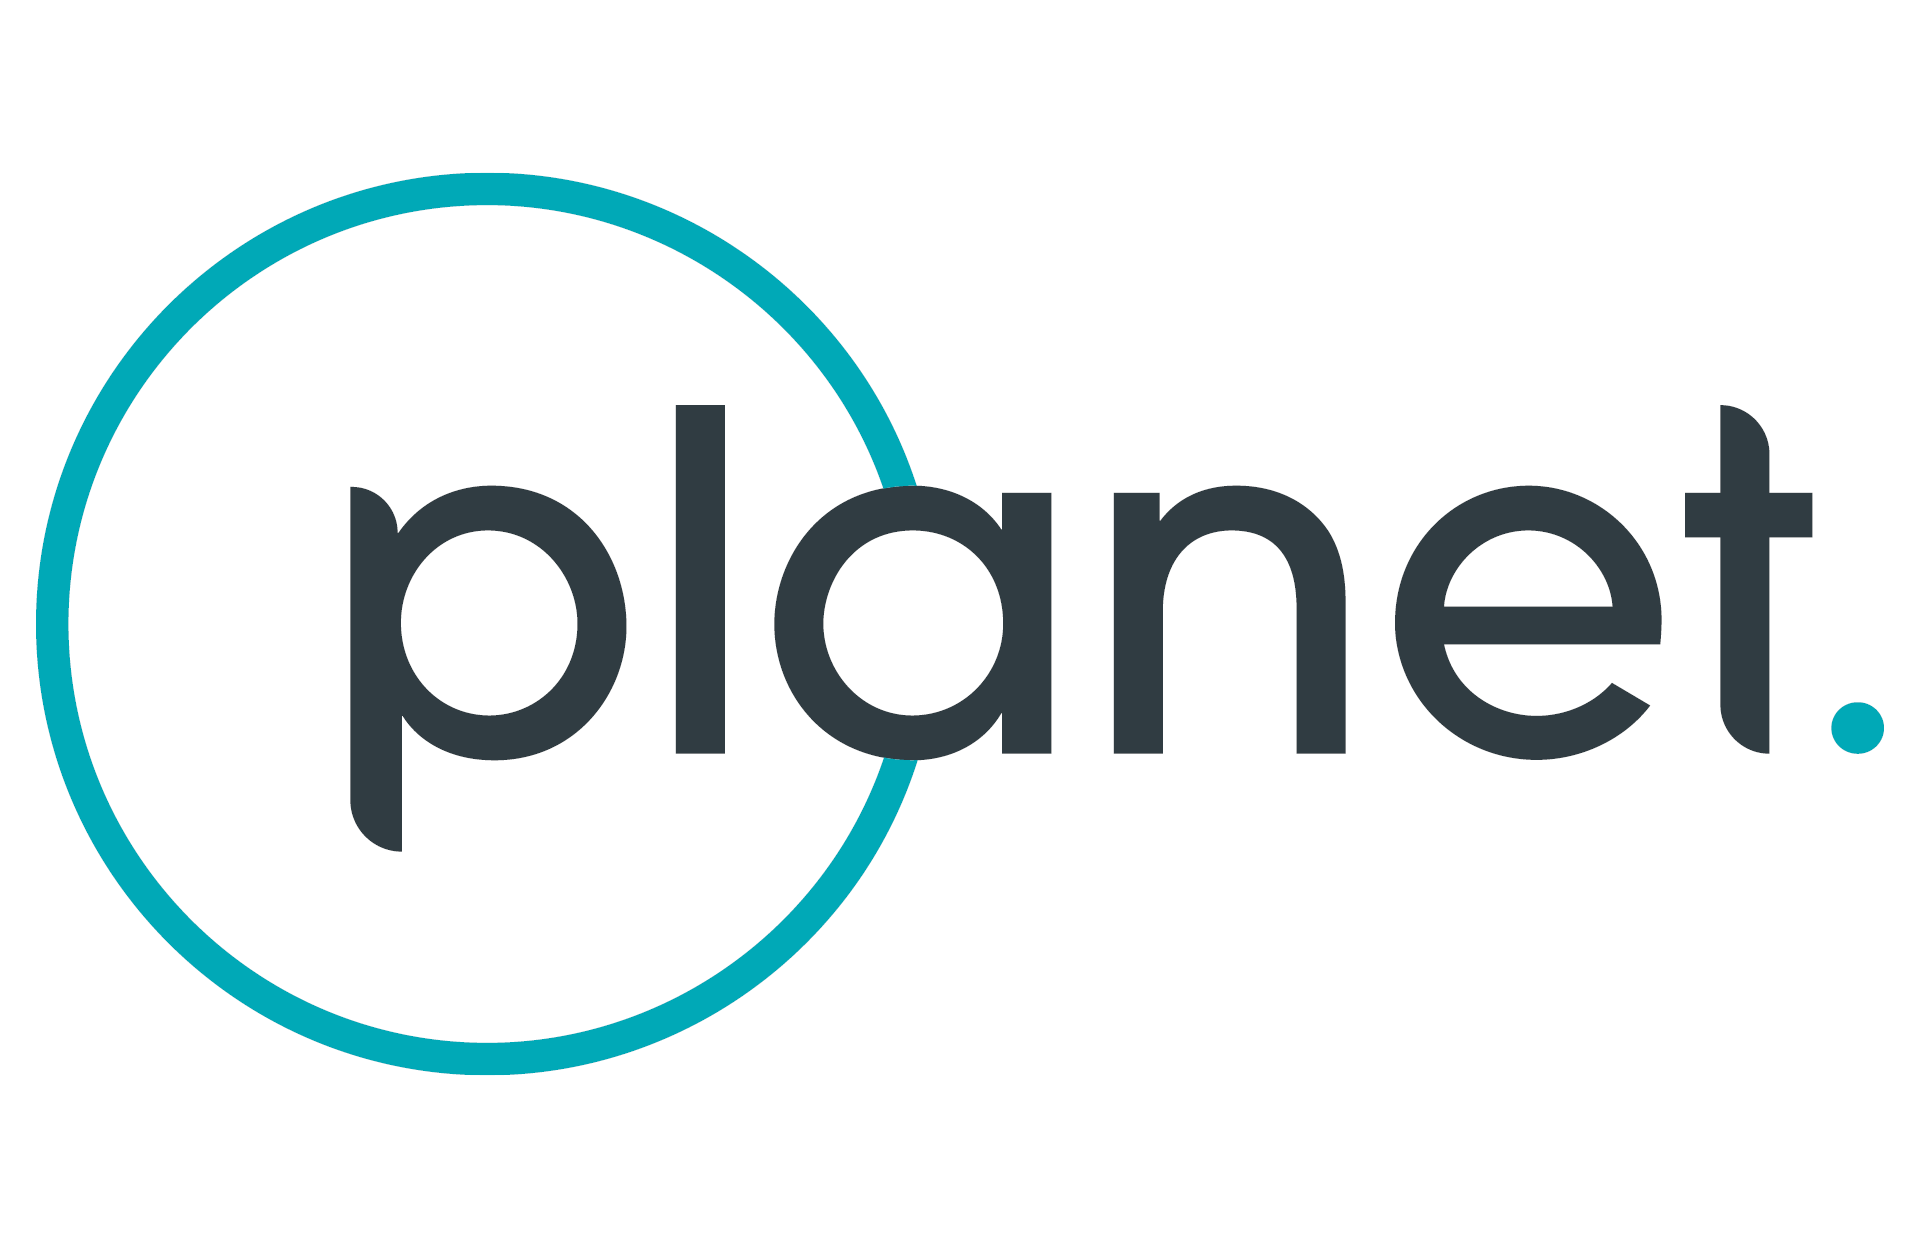 Planet logo